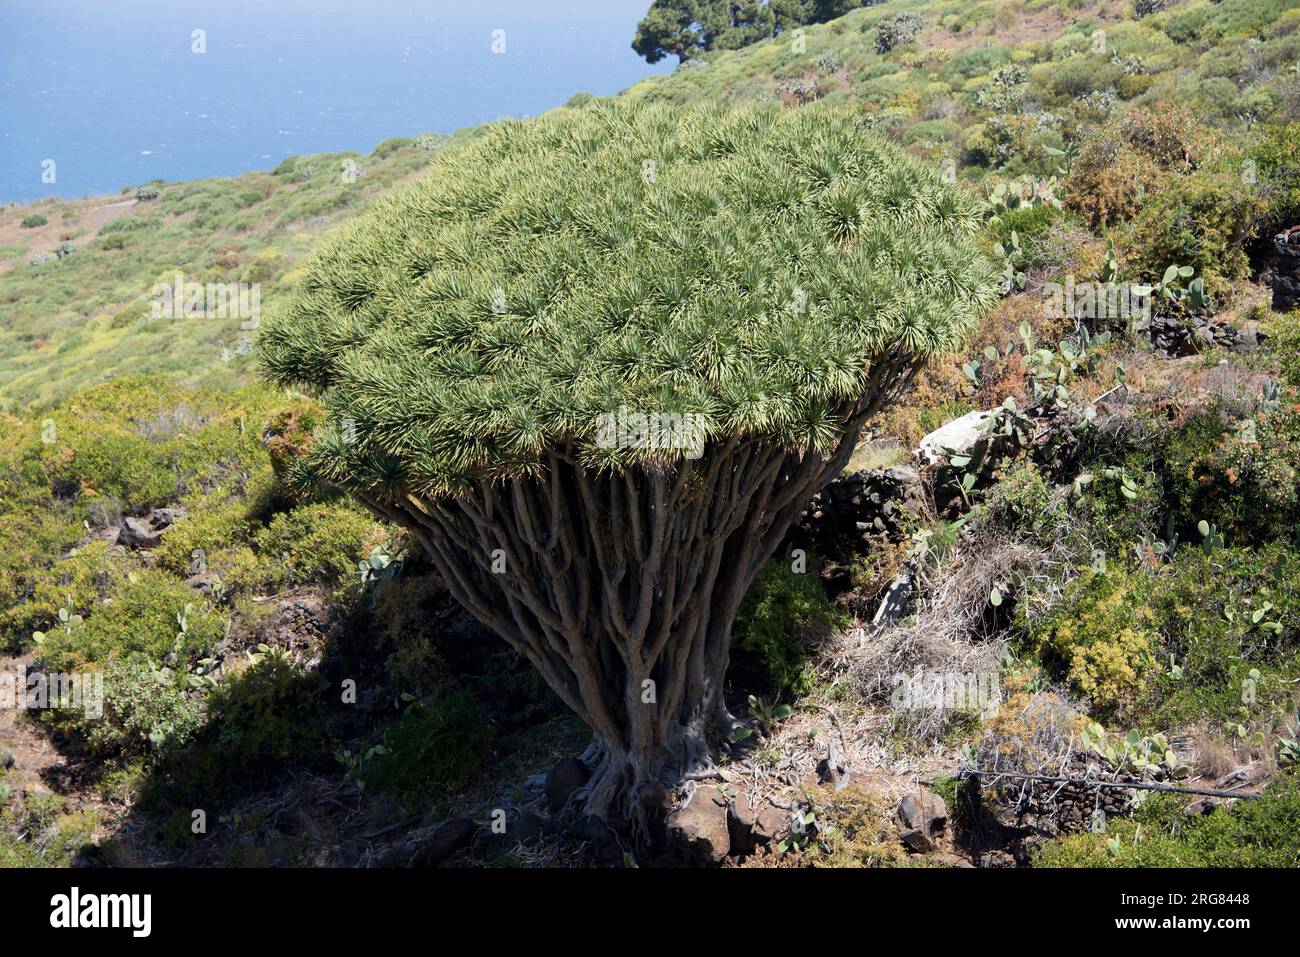 Drago ou dragons des îles Canaries (Dracaena draco) est une plante semblable à un arbre originaire de la région de Macaronésie. Las Tricias, Garafía, l'île de la Palma, Canaries Banque D'Images